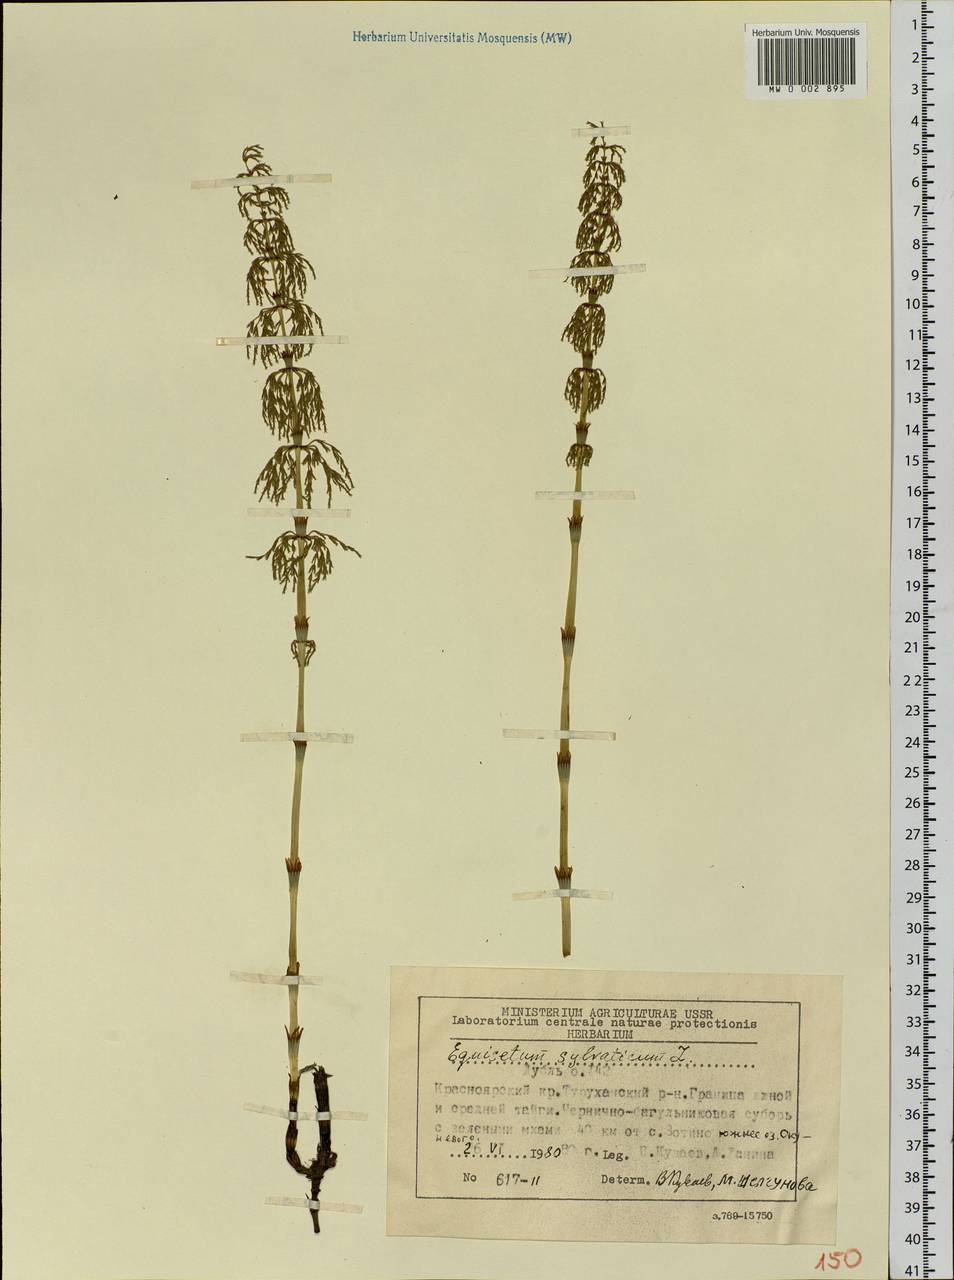 Equisetum sylvaticum L., Siberia, Central Siberia (S3) (Russia)